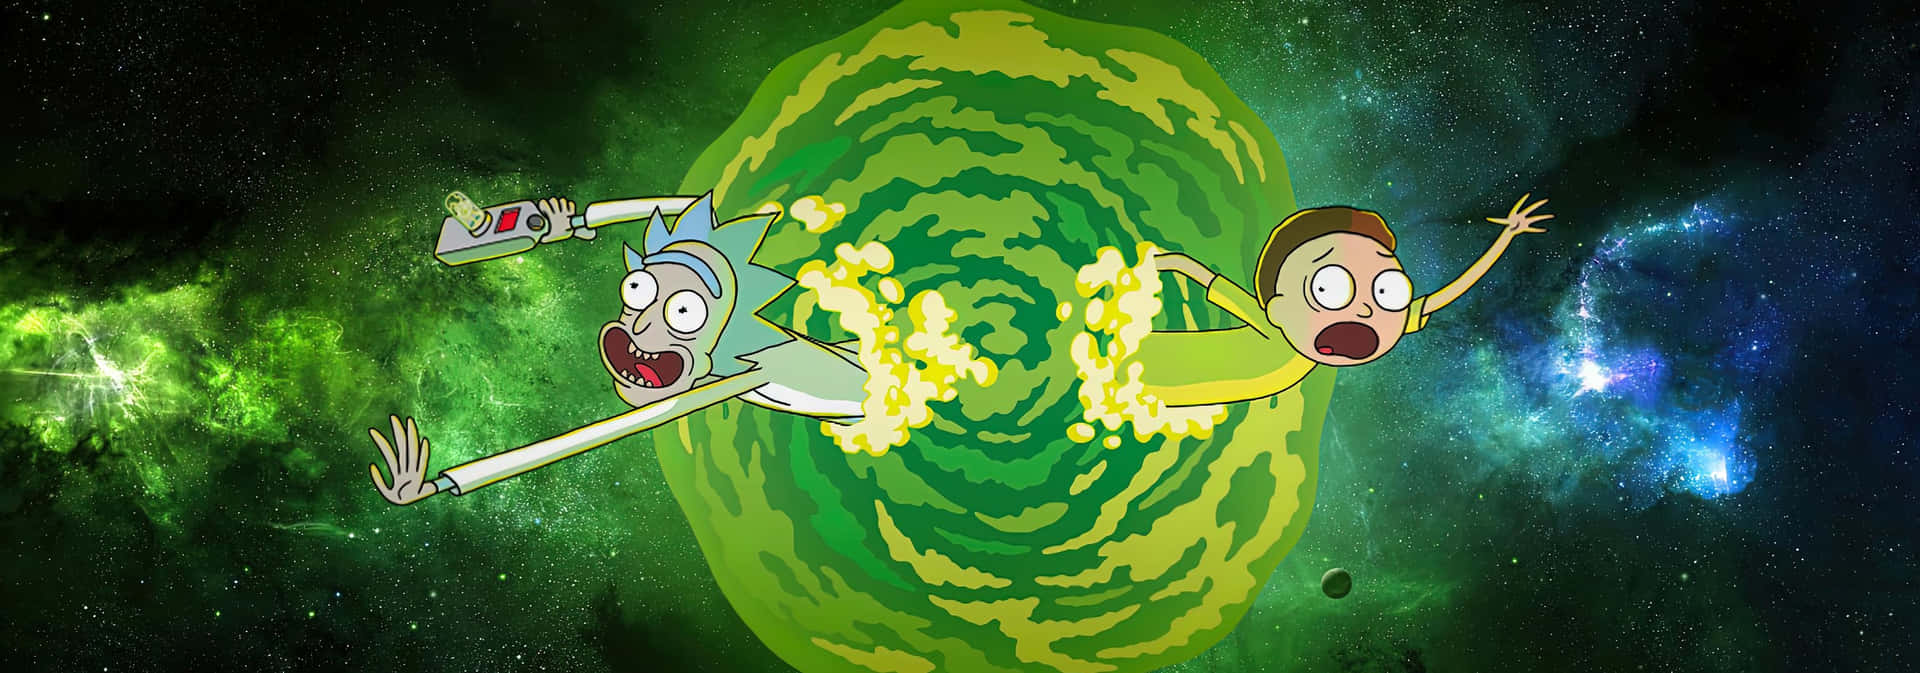 Fondode Pantalla De Rick And Morty Para Zoom - Galaxia.